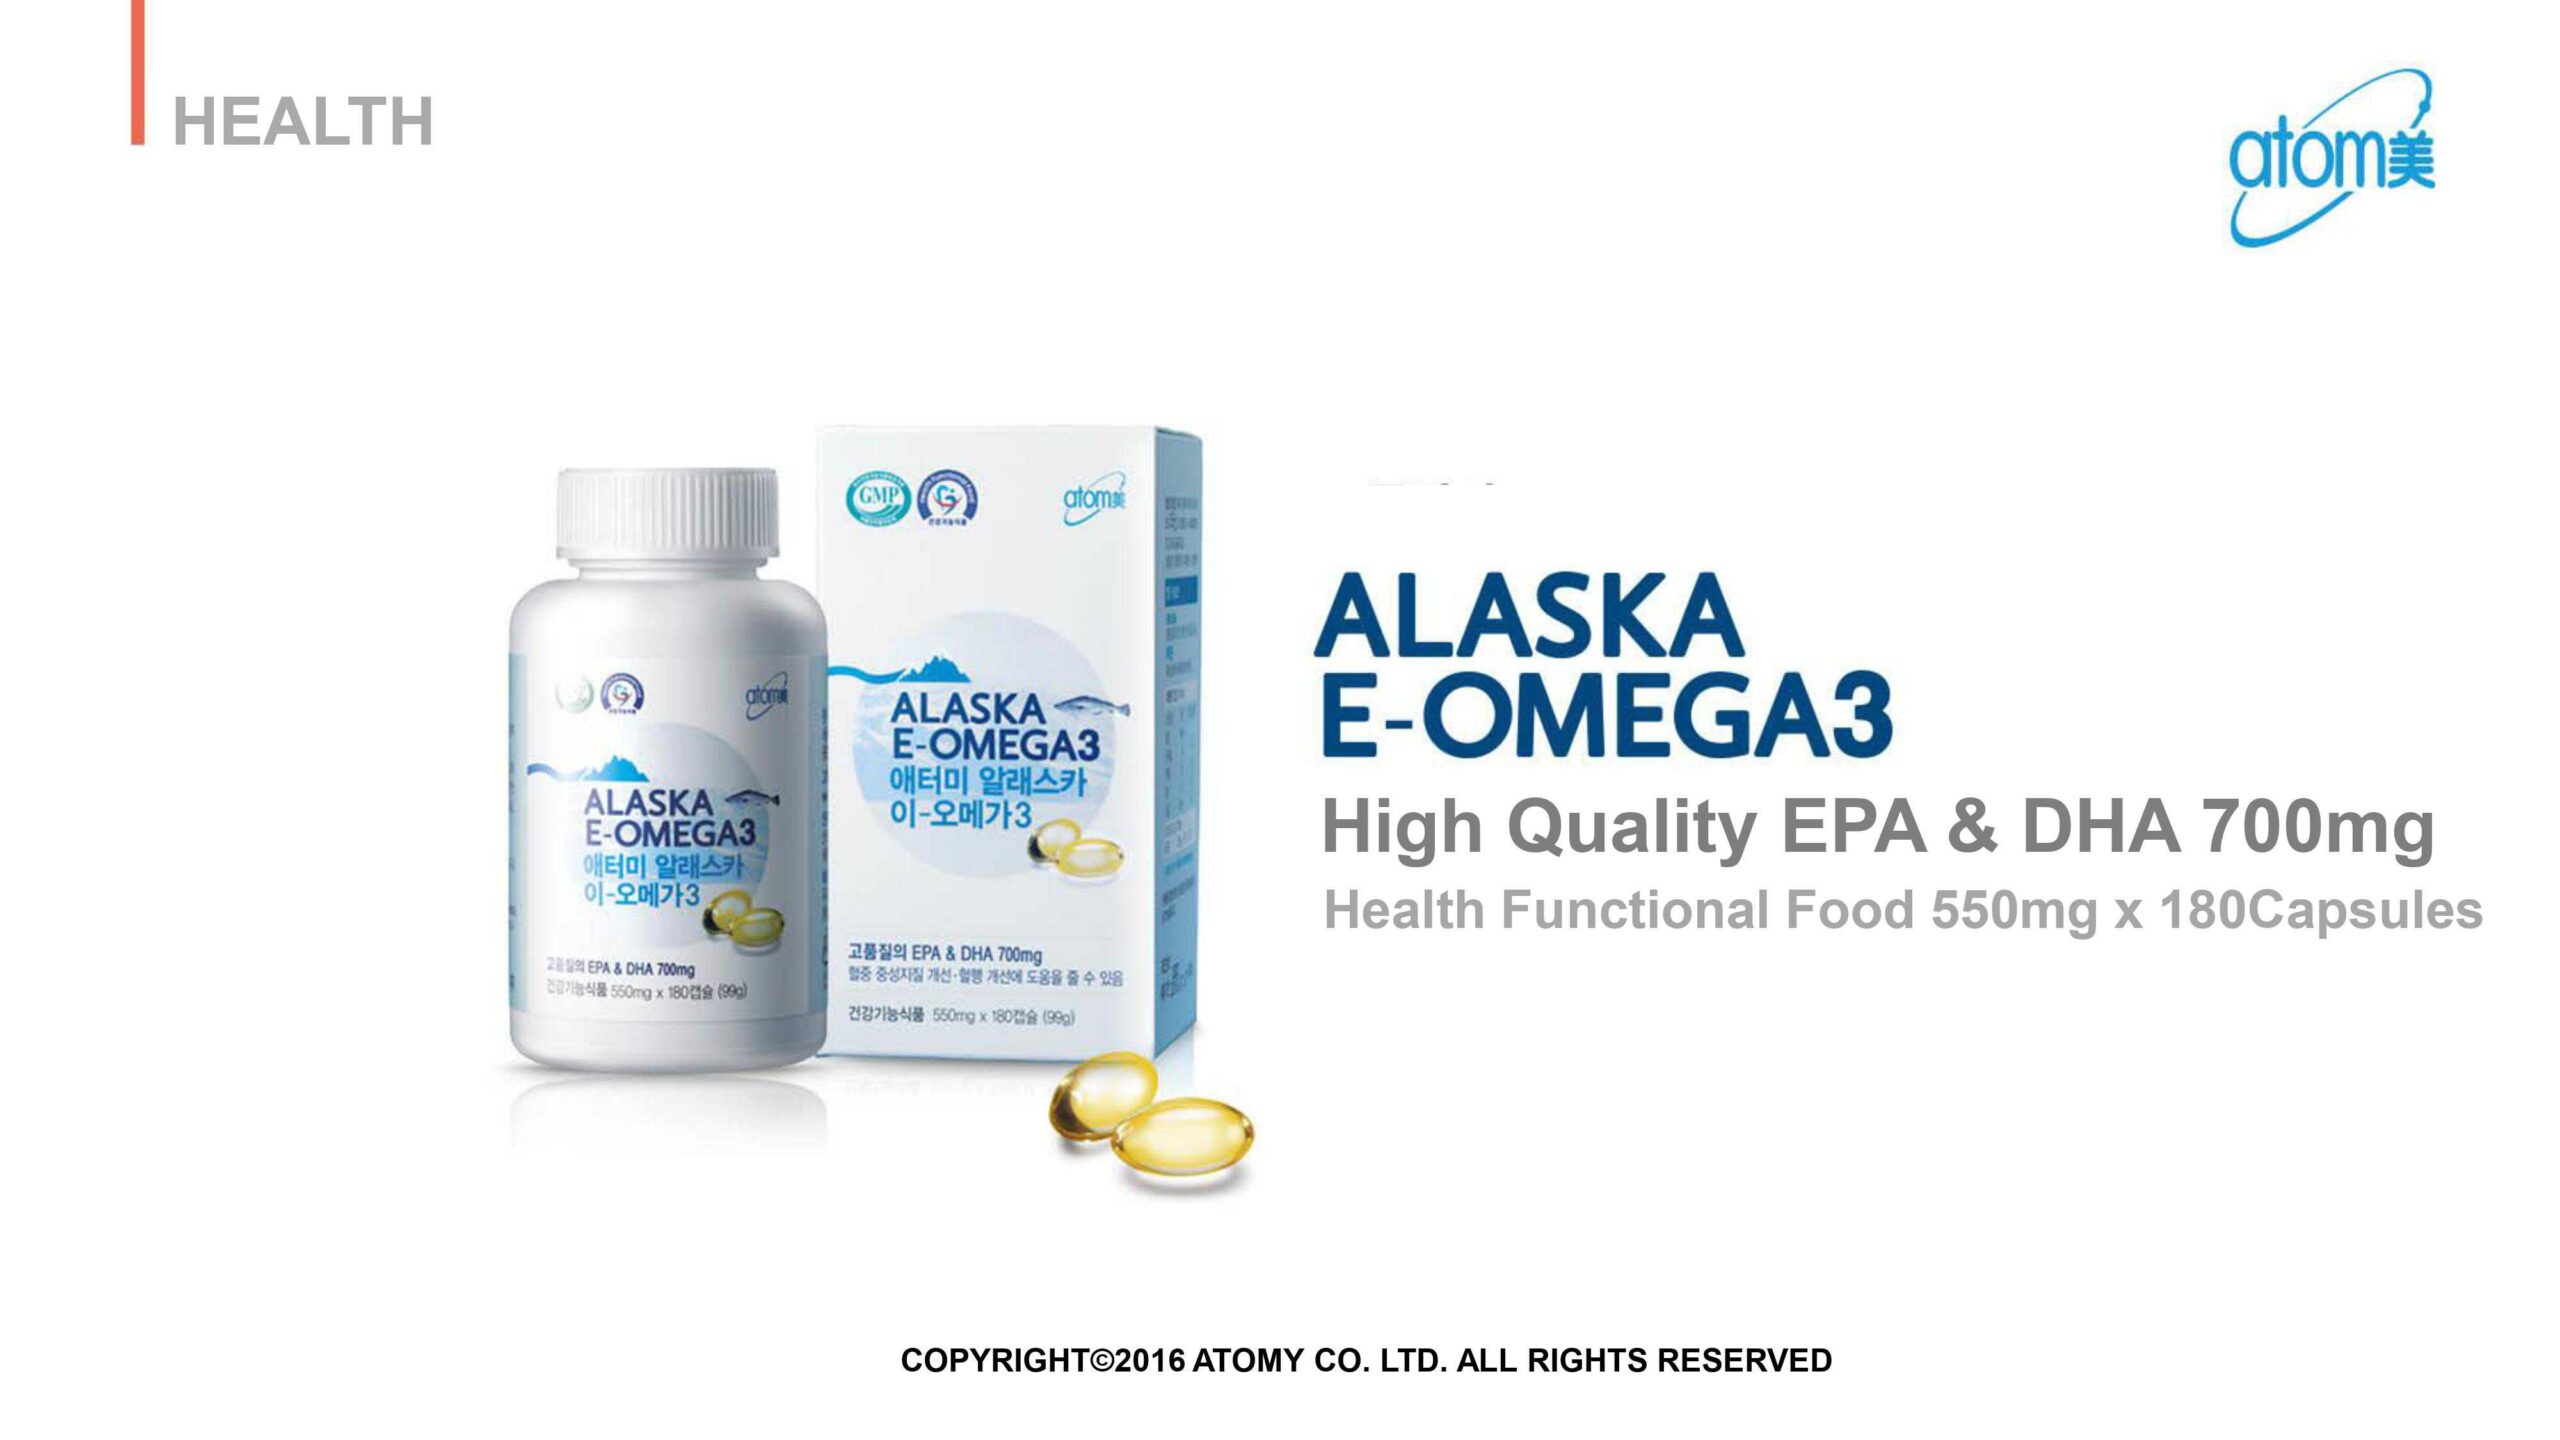 ATOMY Alaska E-Omega 3